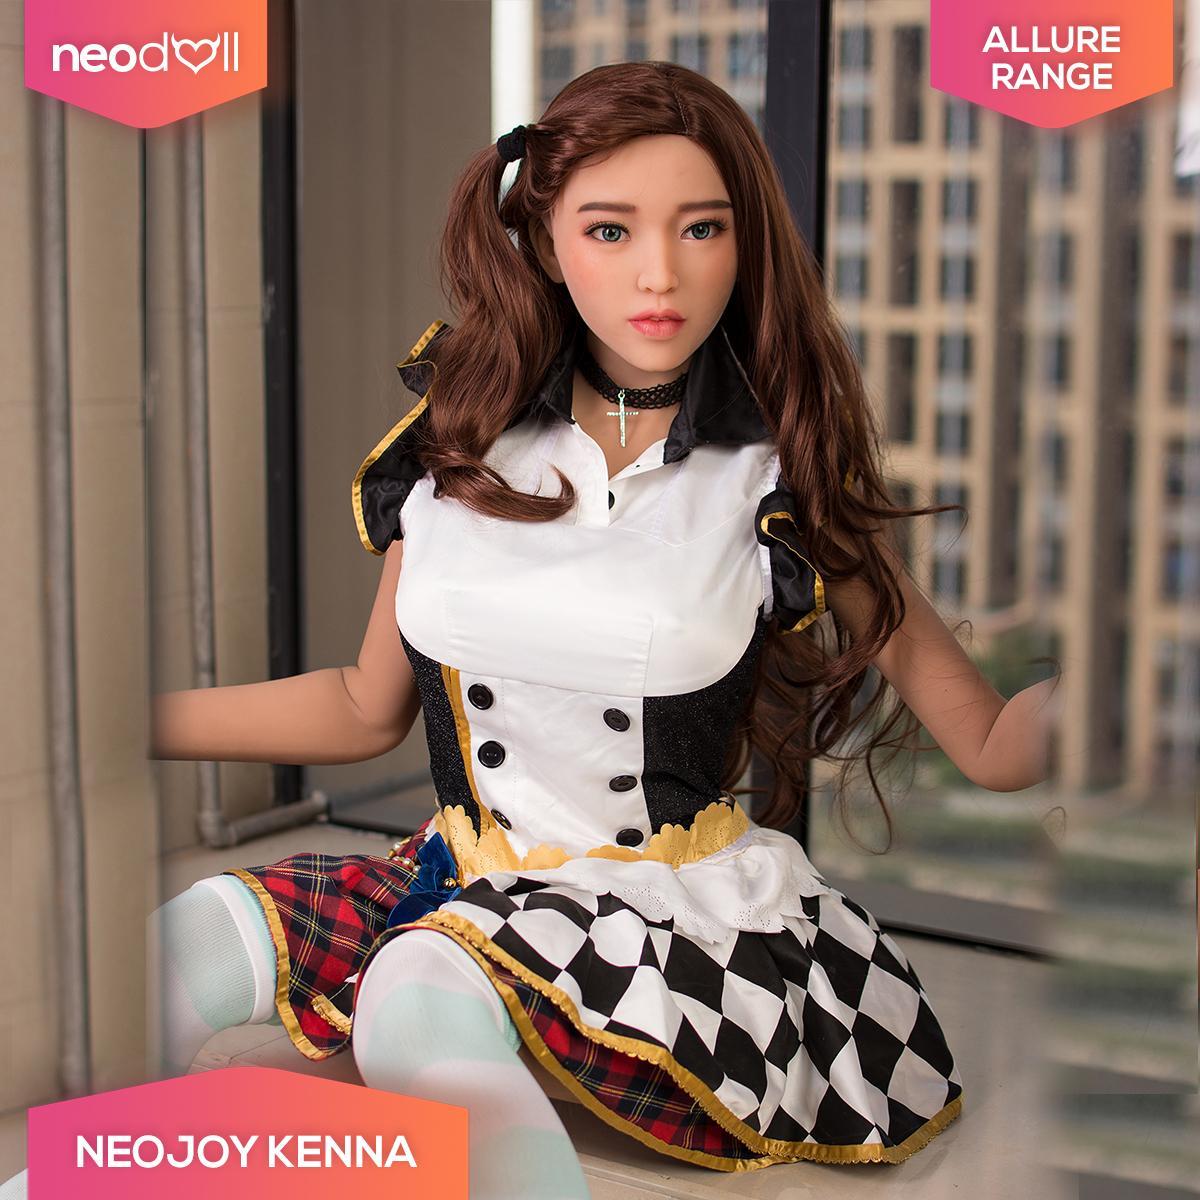 Neodoll Allure Kenna - Realistic Sex Doll -165cm